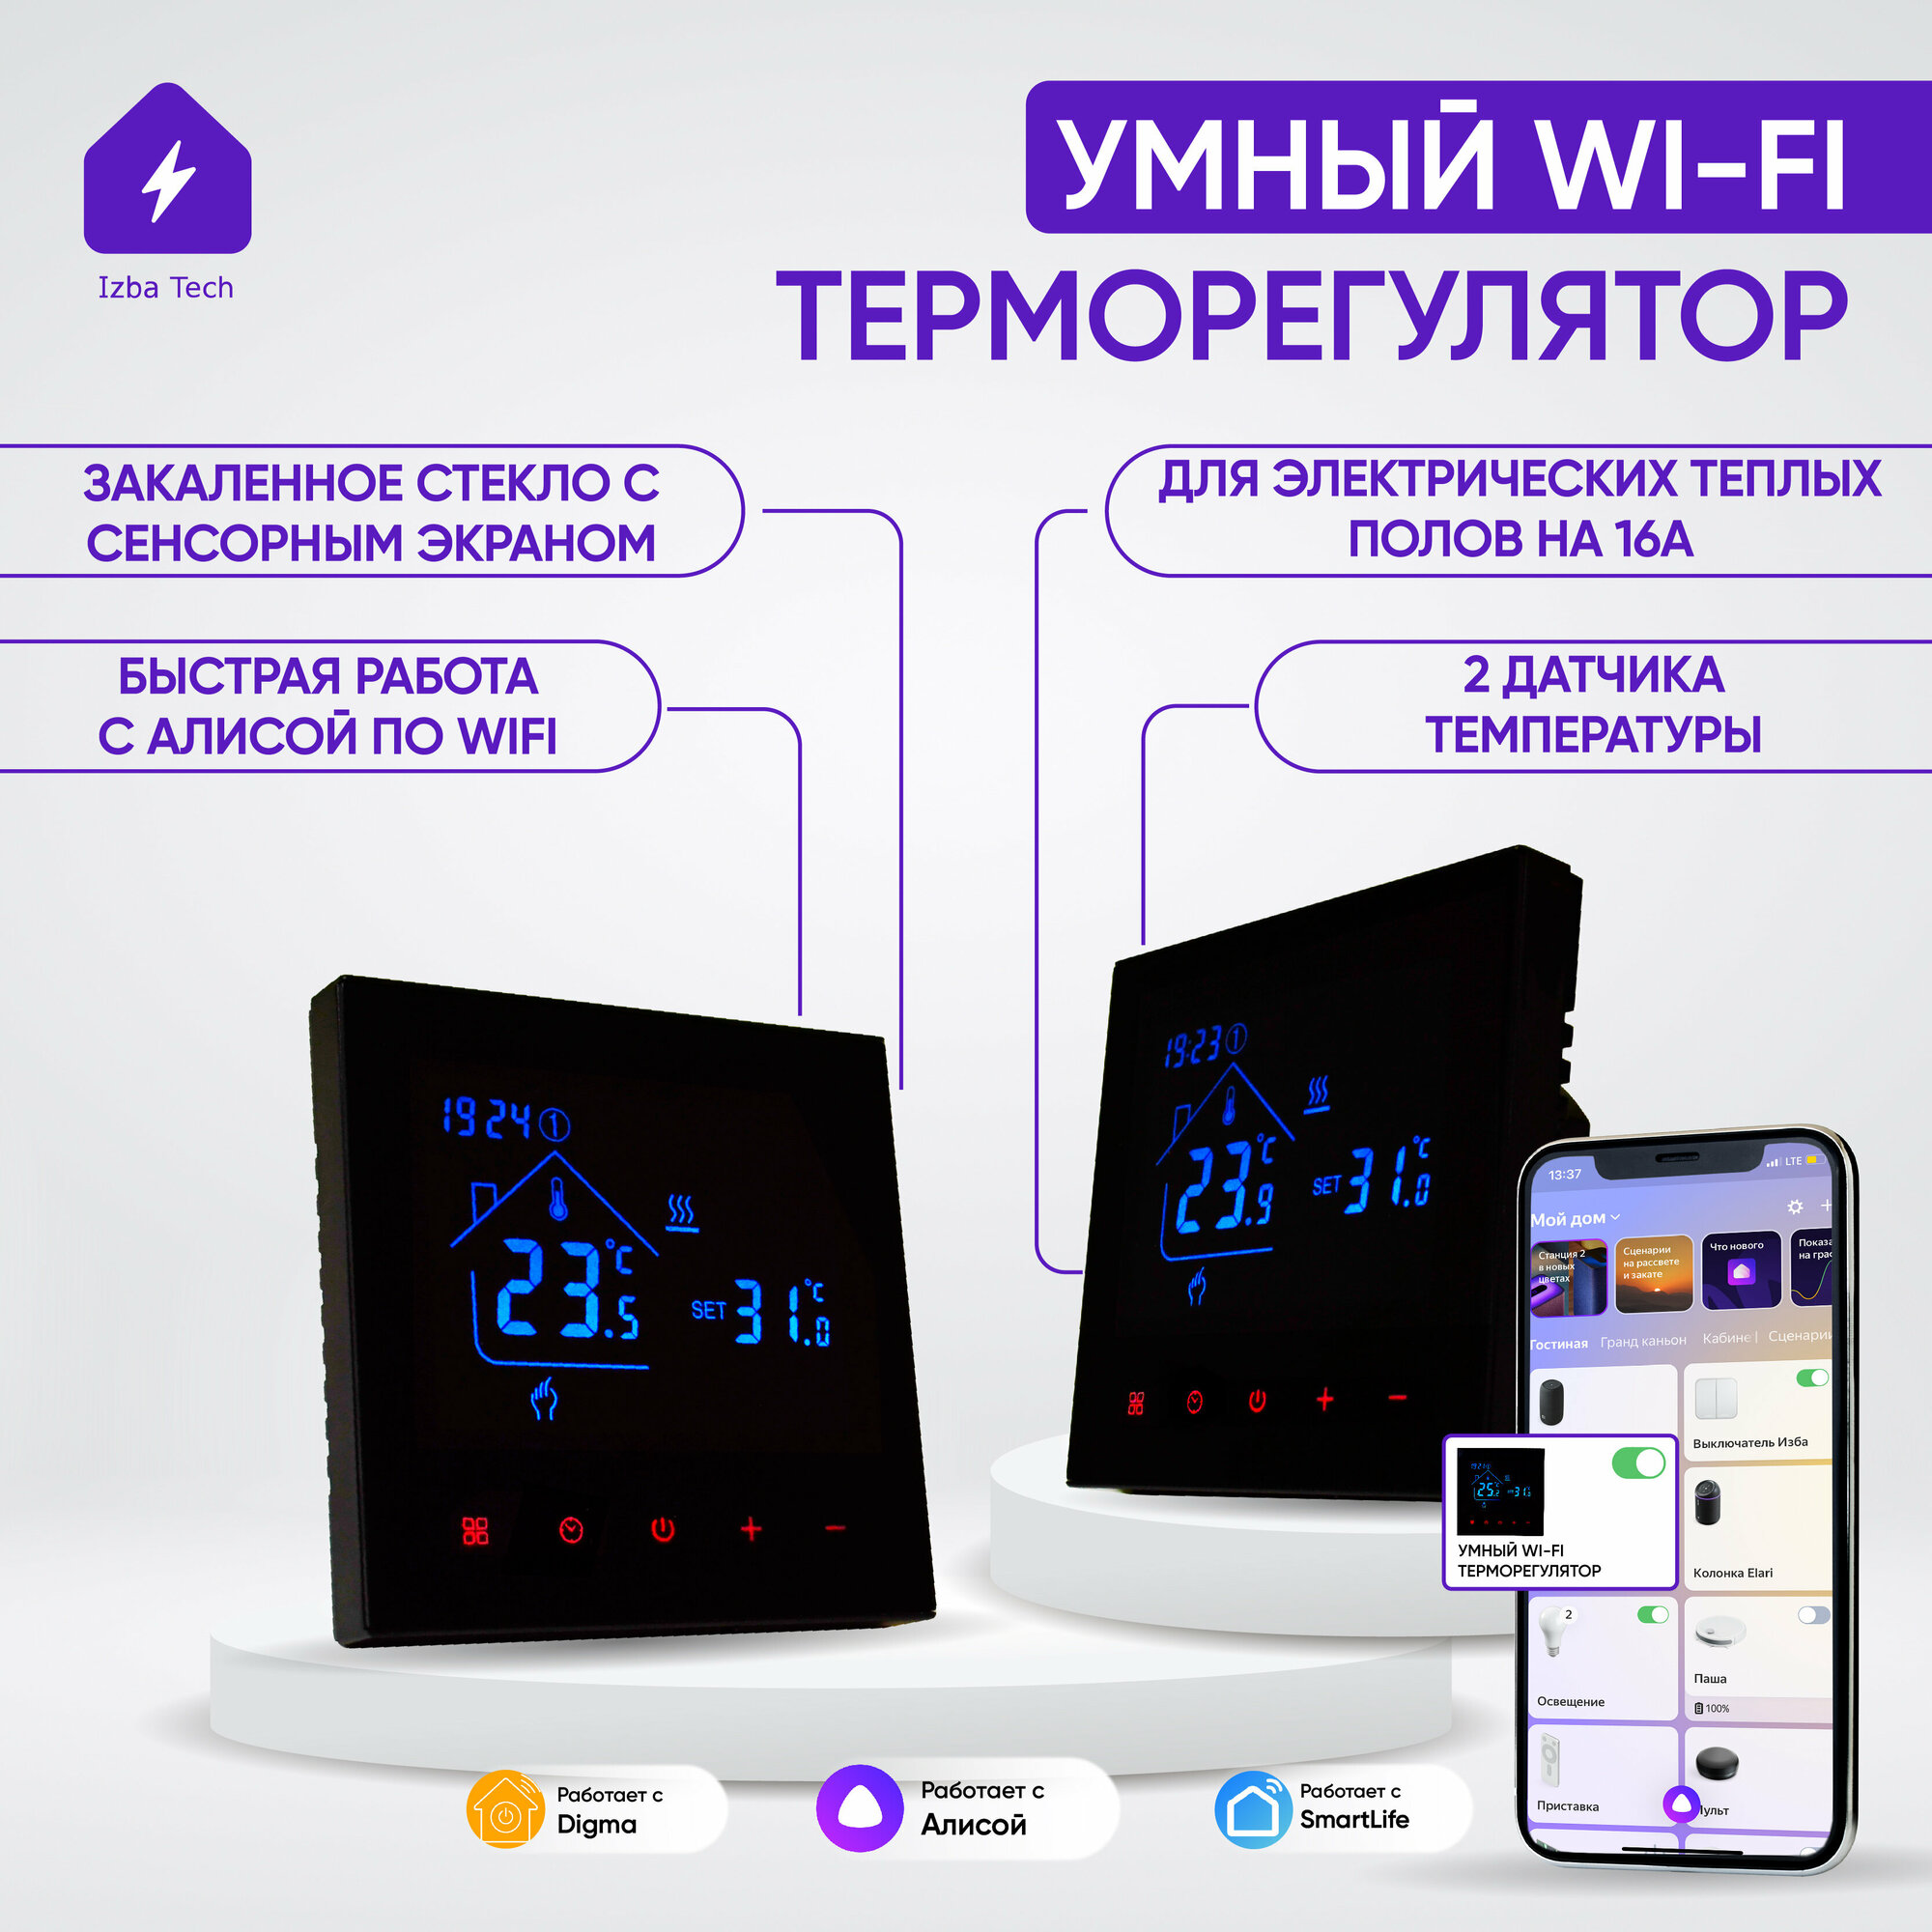 Умный терморегулятор для тёплых полов с WIFI черного цвета для Яндекс Алисы, на 16А, сенсорный, с ЖК экраном